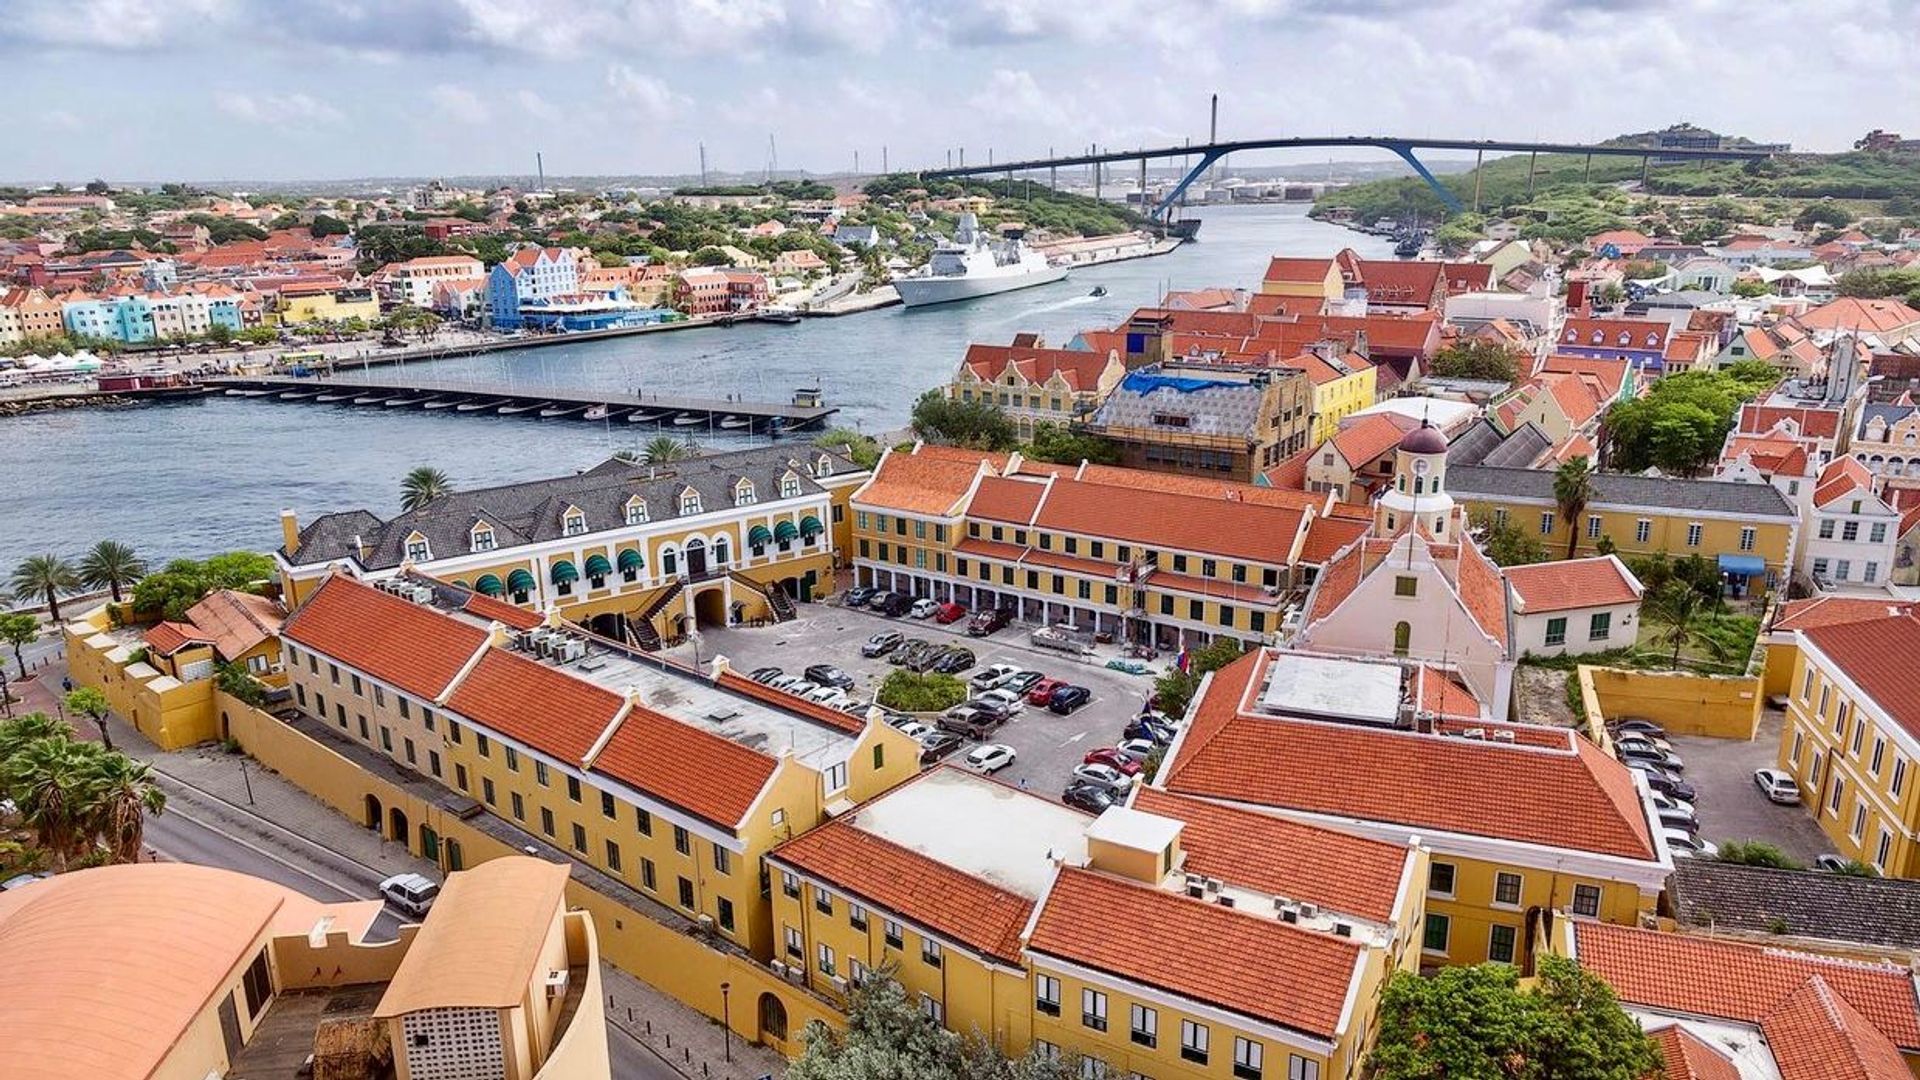 Landspakket Curaçao